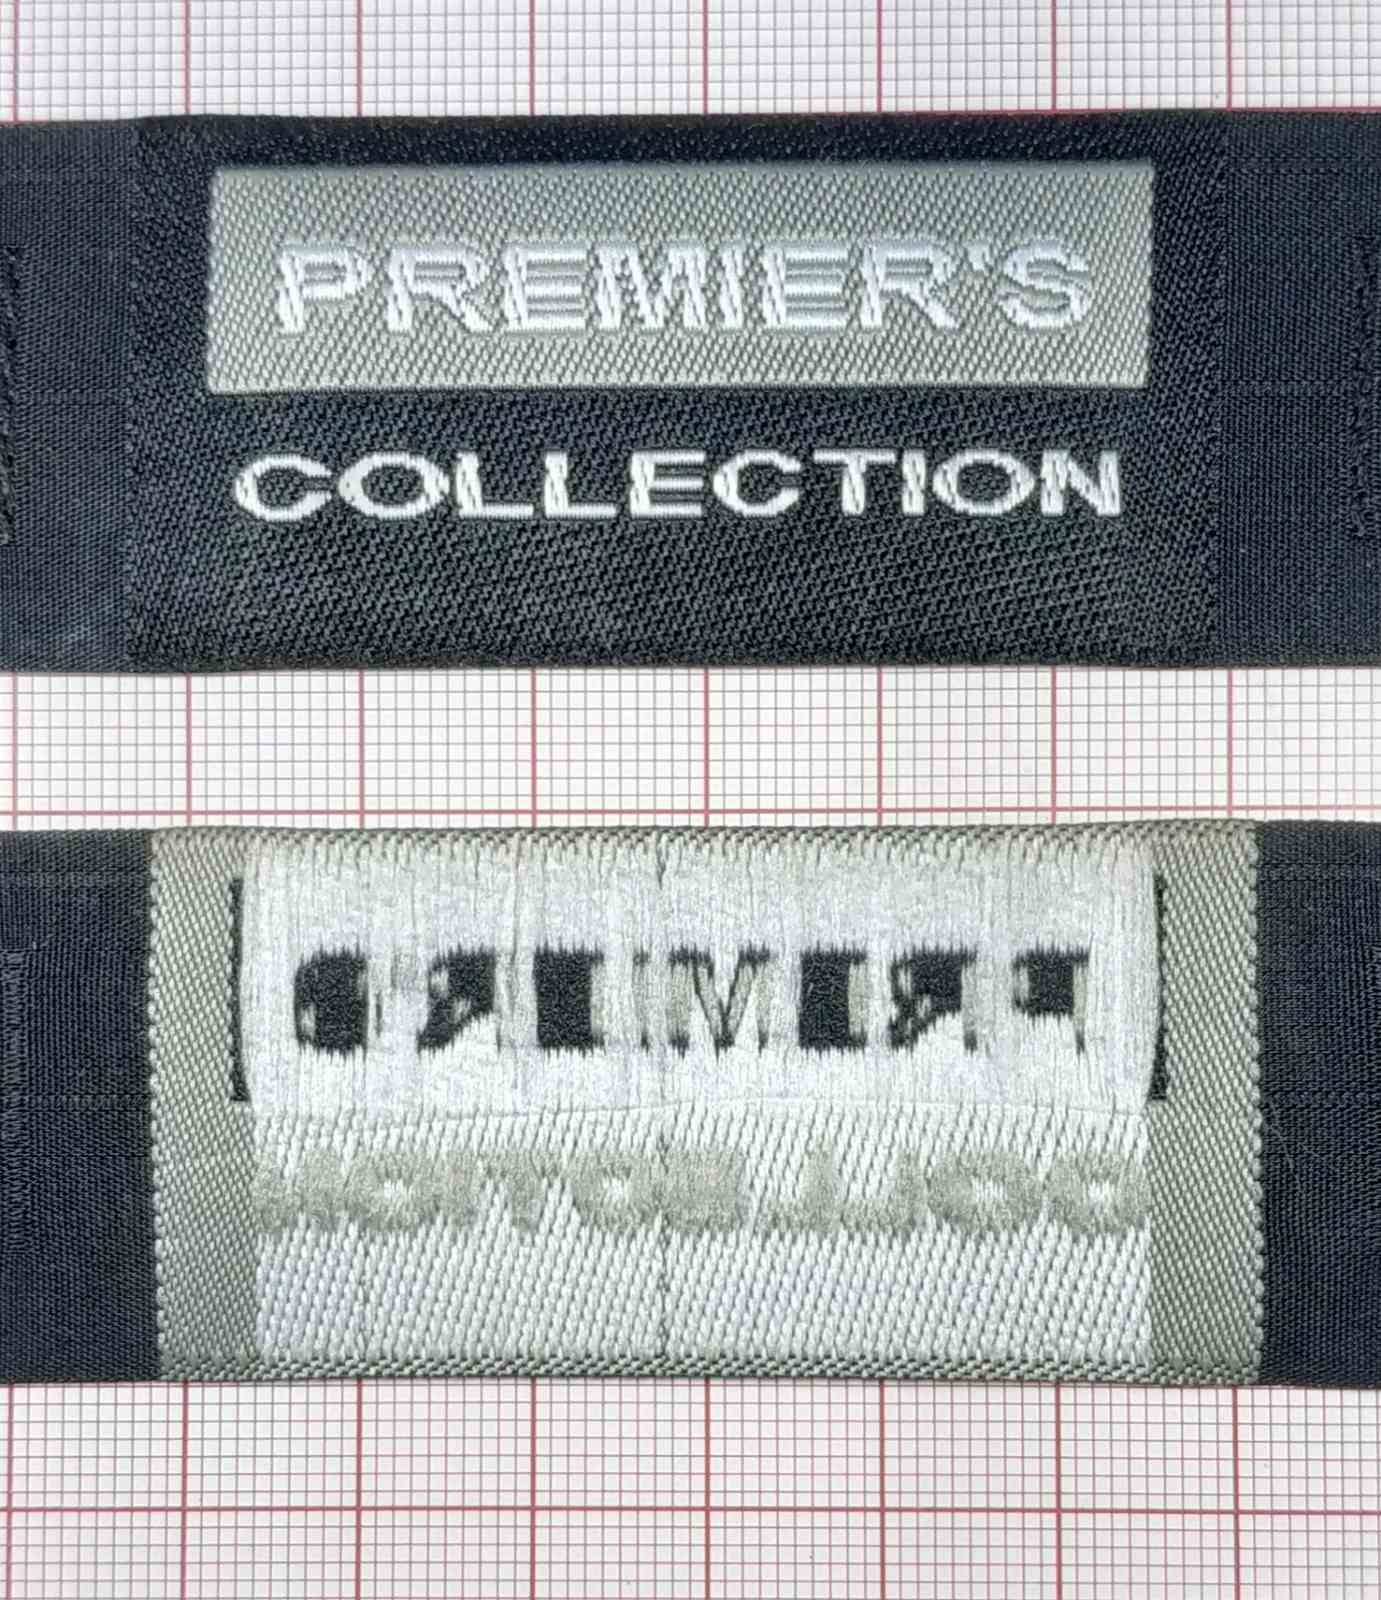 Этикетка тк. выш. Premiers collection/ 3 см/. Вышивка / этикетка тканевая